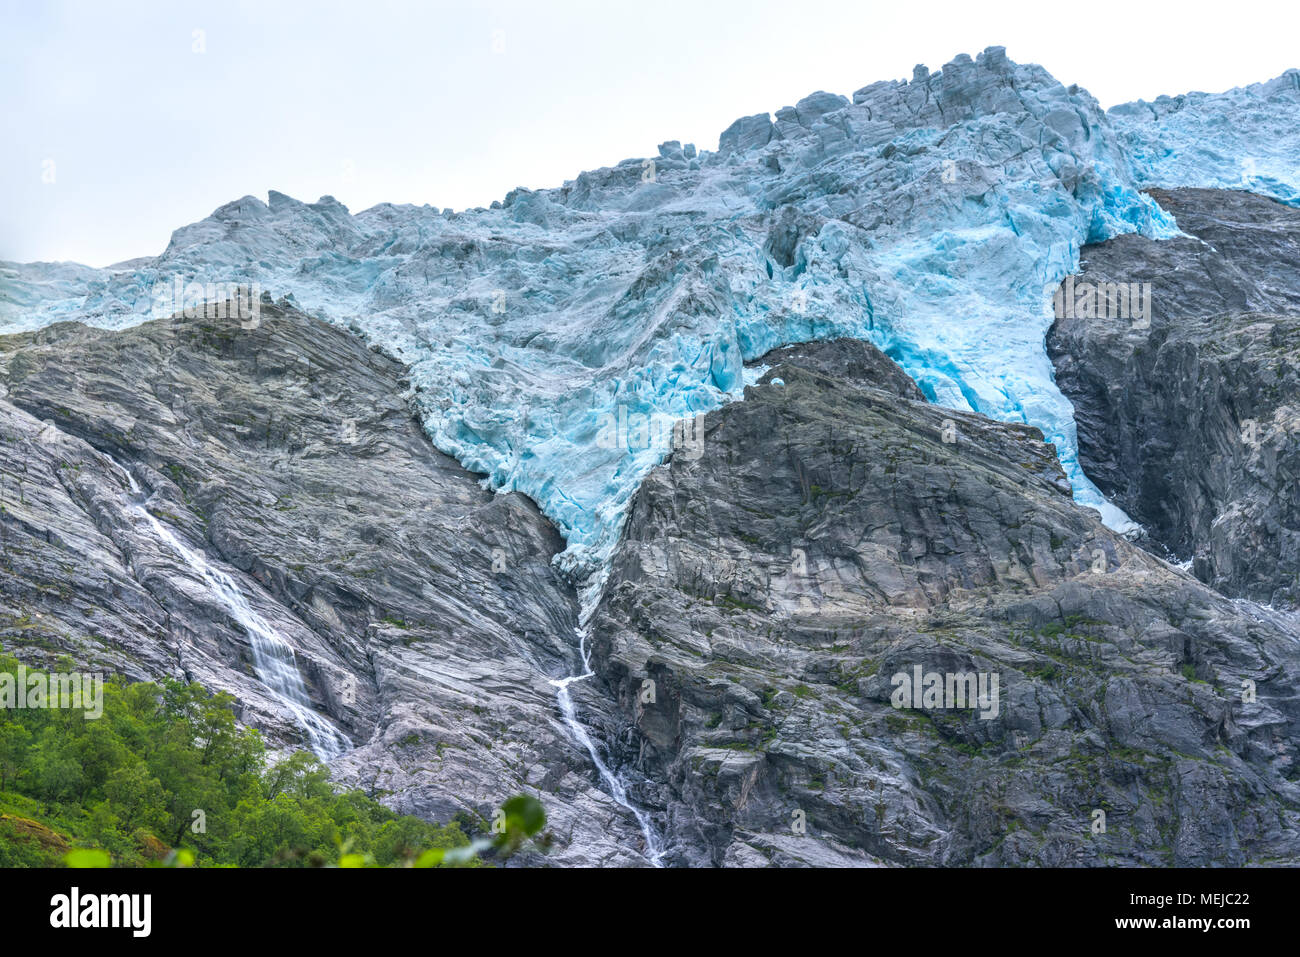 Glacier Supphellebreen, vicino, parte di Jostedal National Park, Norvegia, vicino a Fjaerland, blu scintillante ghiaccio del ghiacciaio in un ruvido paesaggio di montagna Foto Stock